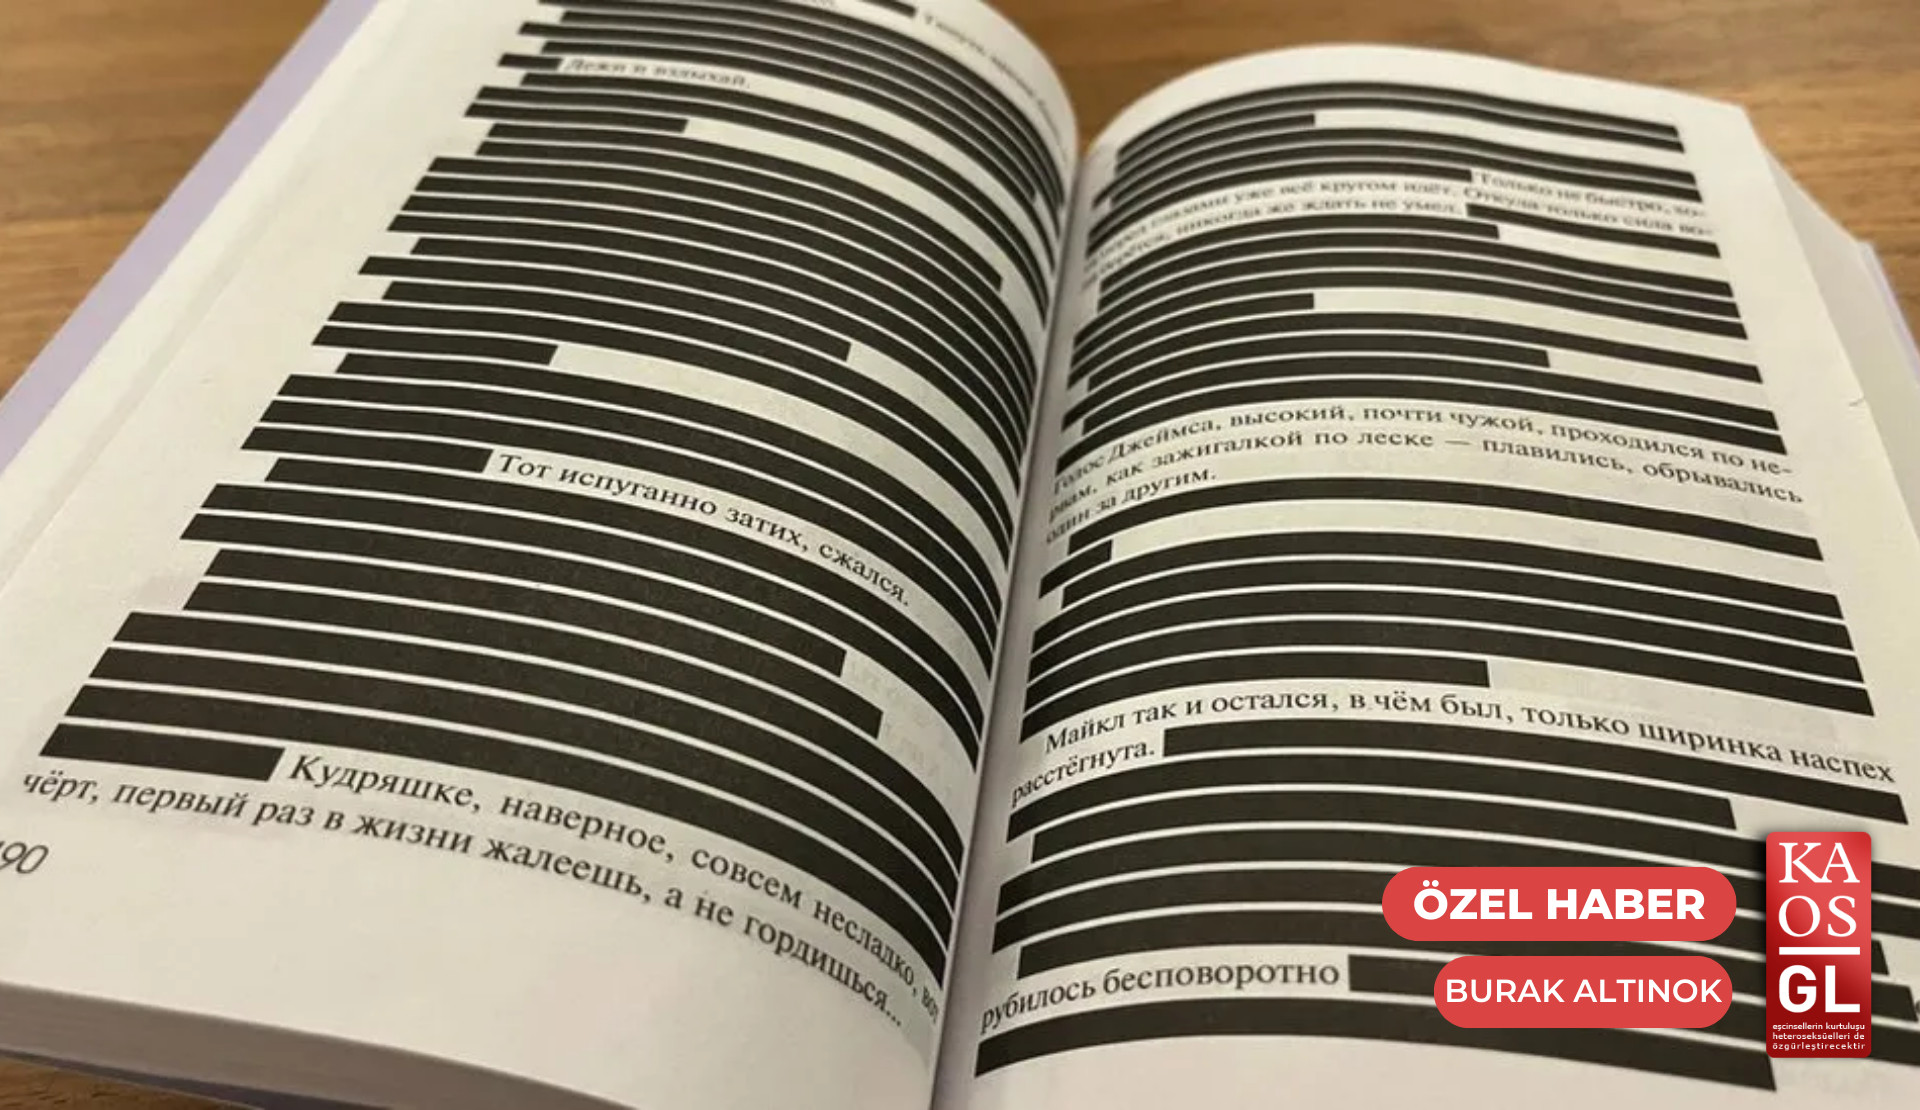 Rusya’da 252 kitabın satışı ‘LGBT propagandası’ yasasından yasaklandı | Kaos GL - LGBTİ+ Haber Portalı Haber